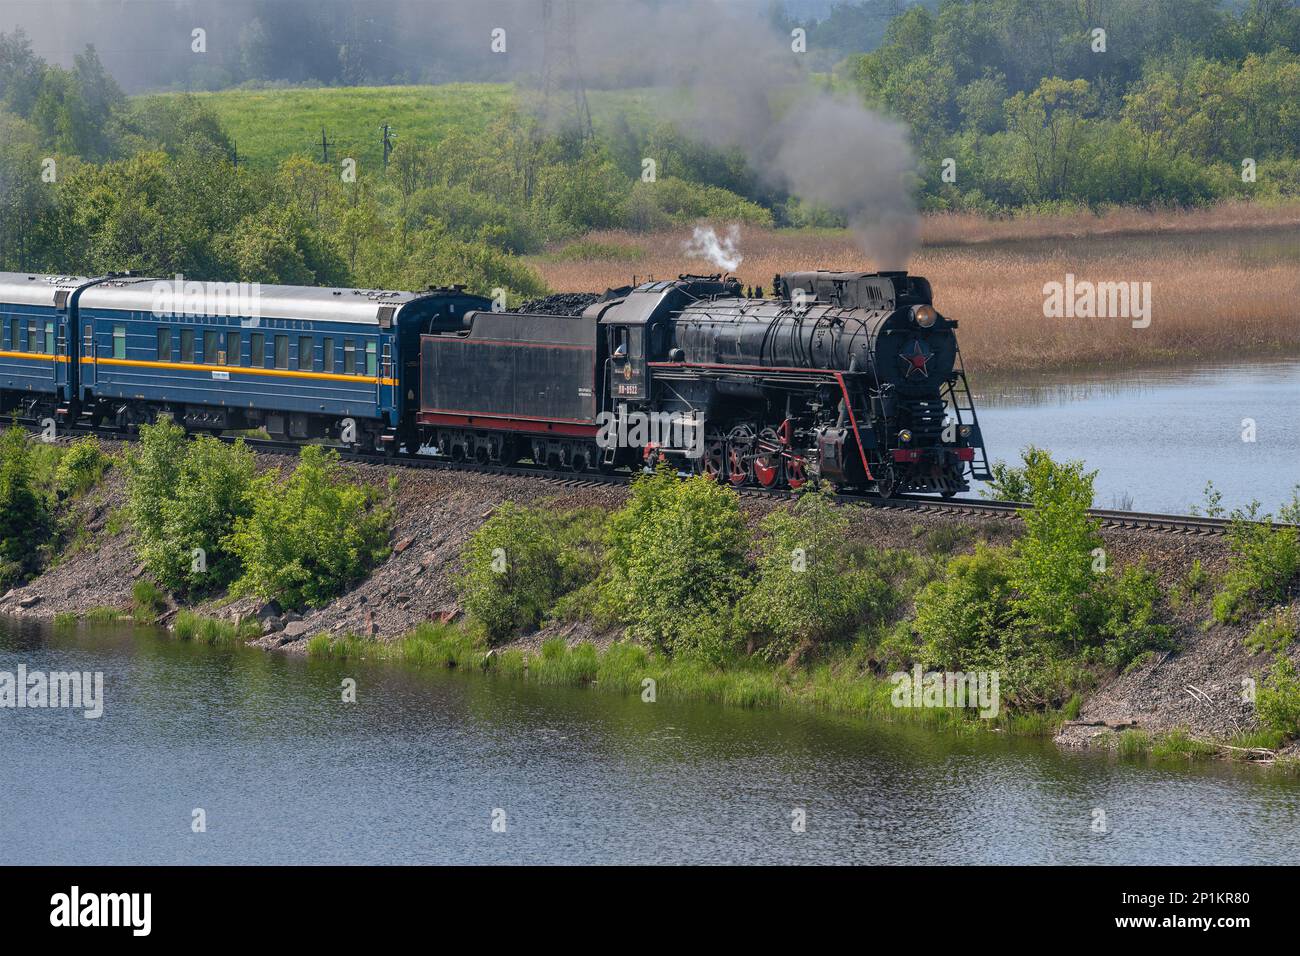 SORTAVALA, RUSSIE - 11 JUIN 2022 : ancienne locomotive à vapeur soviétique de la série 'LV' avec le train 'Ruskeala Express' Banque D'Images